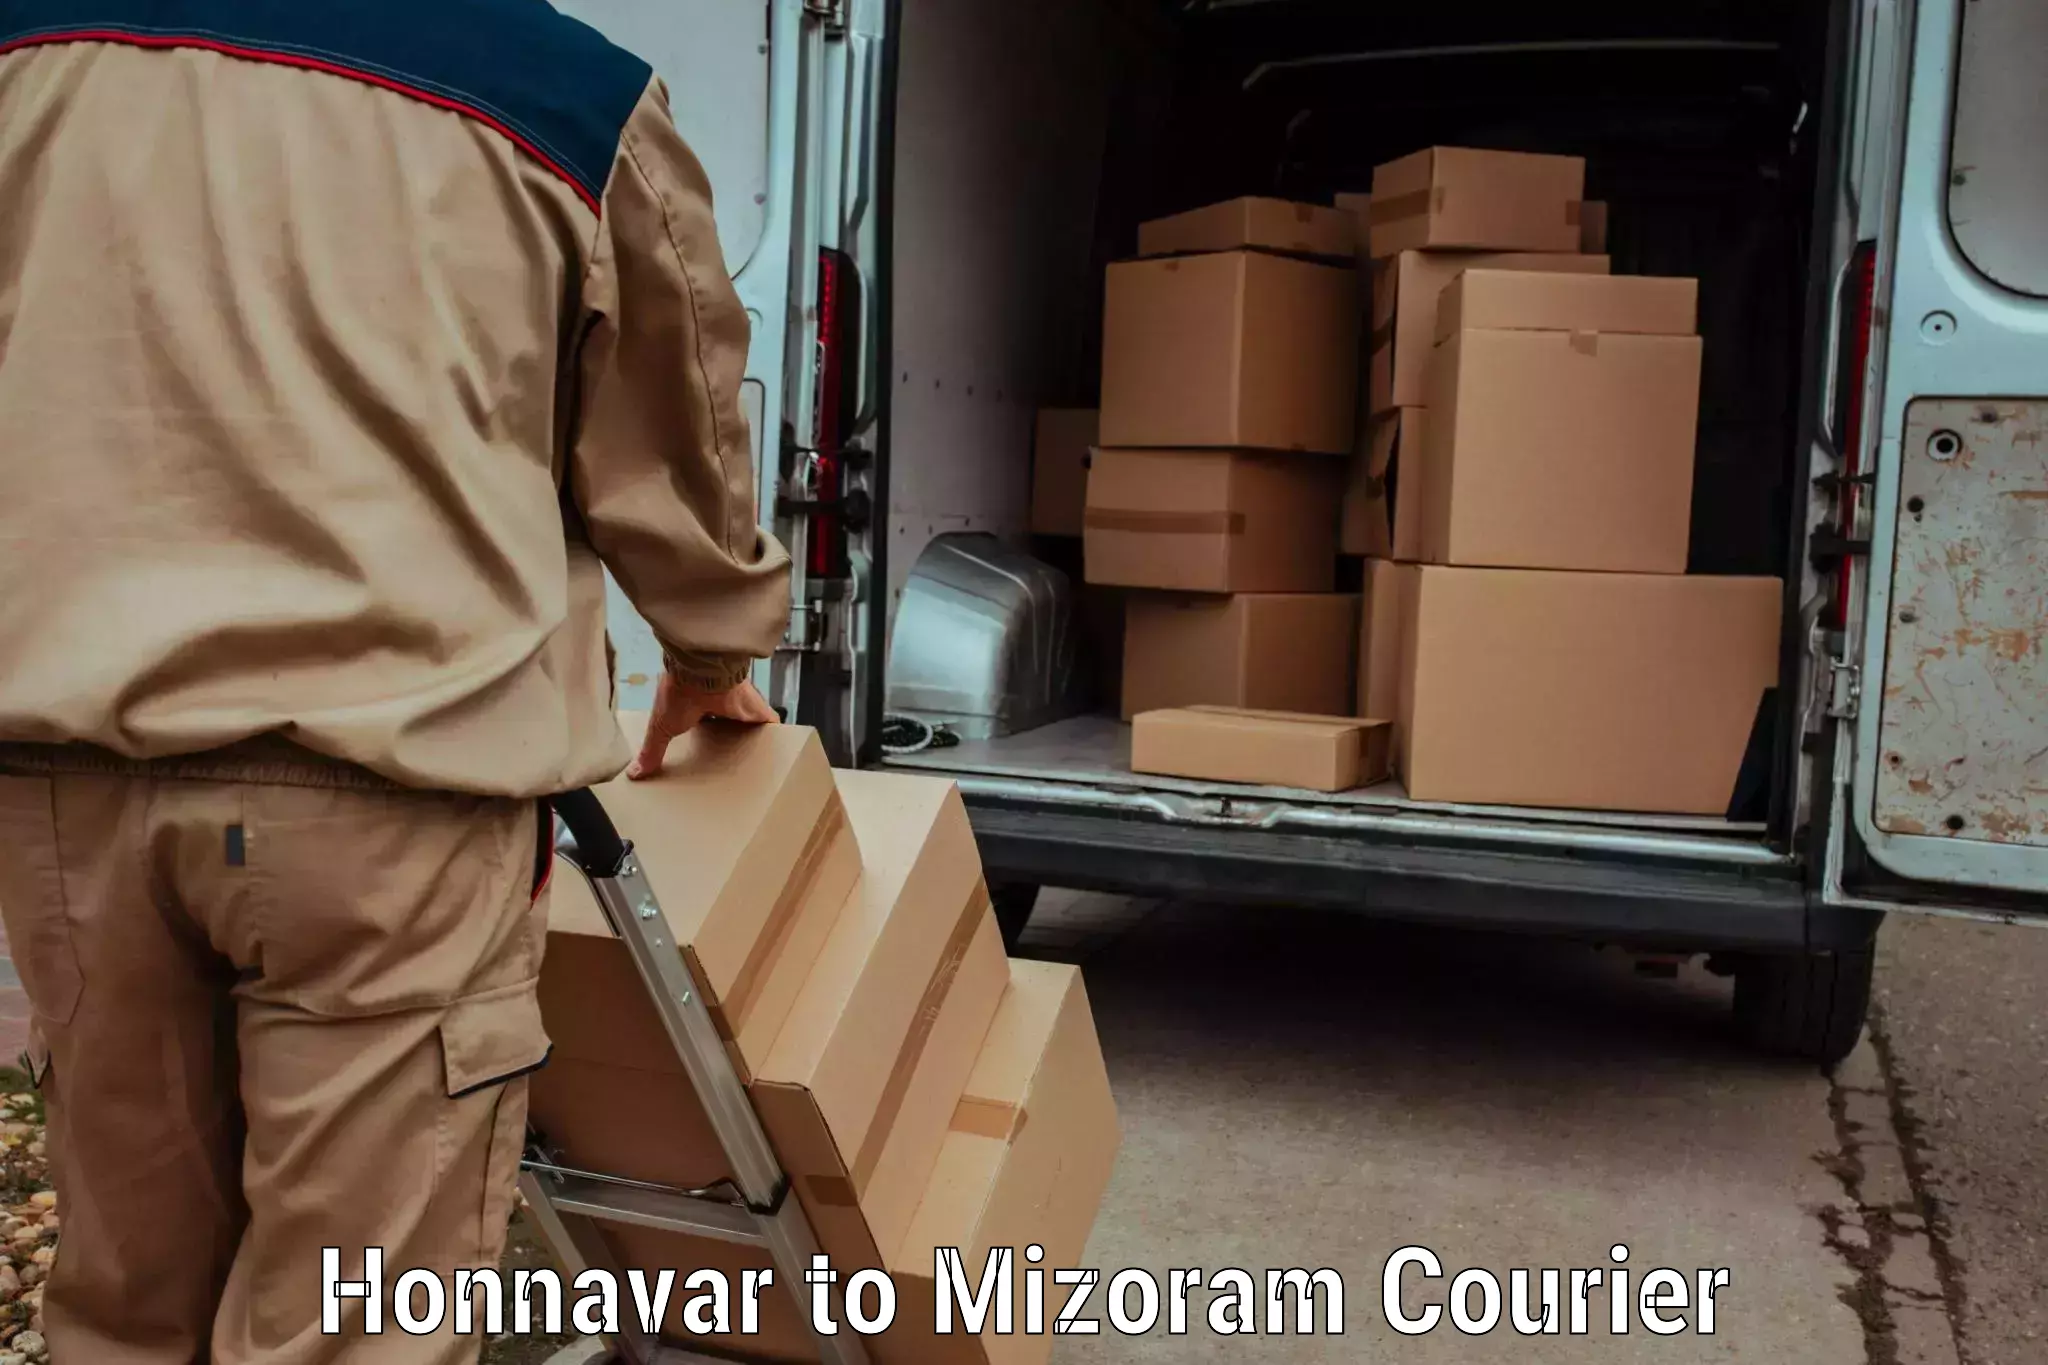 Luggage transport consulting Honnavar to Mizoram